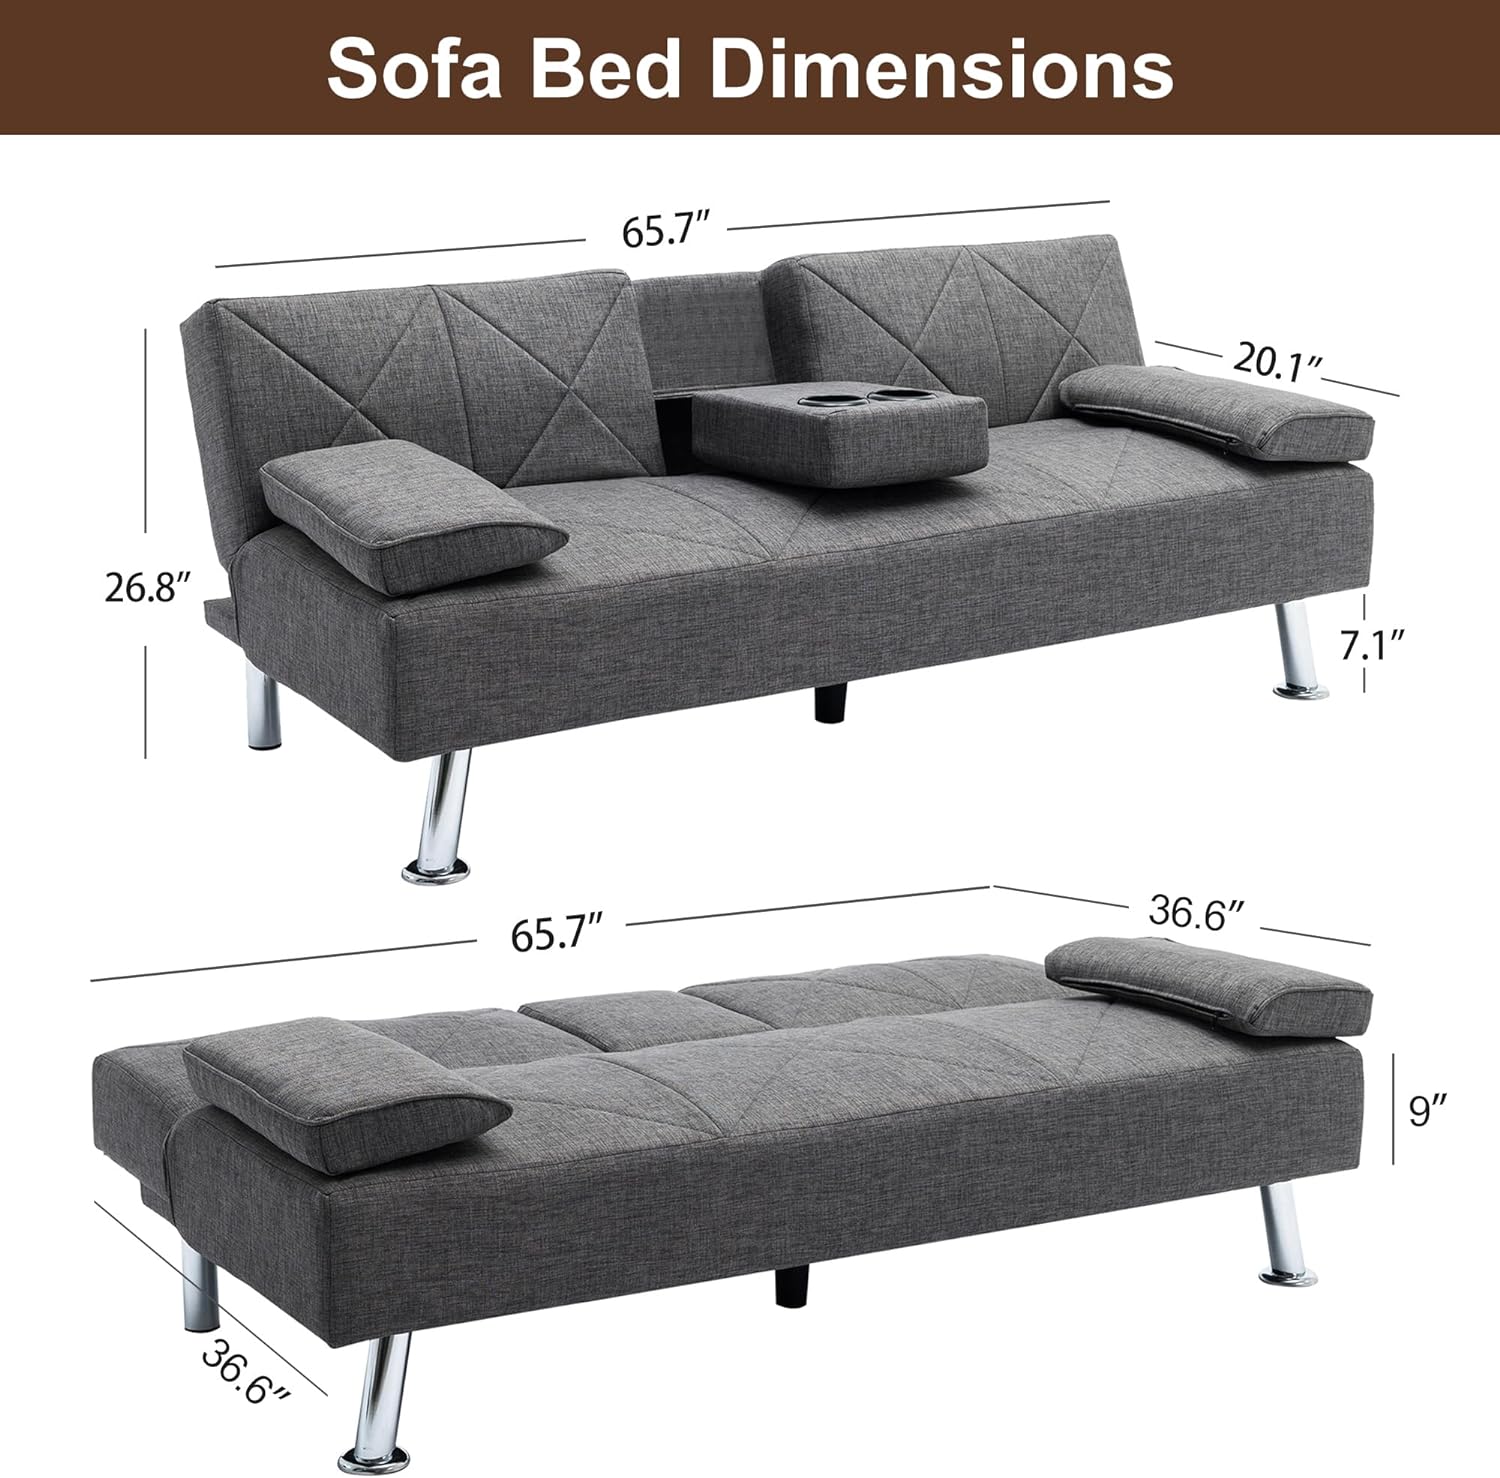 VECELO Modern Convertible Folding Futon Sofa Bed